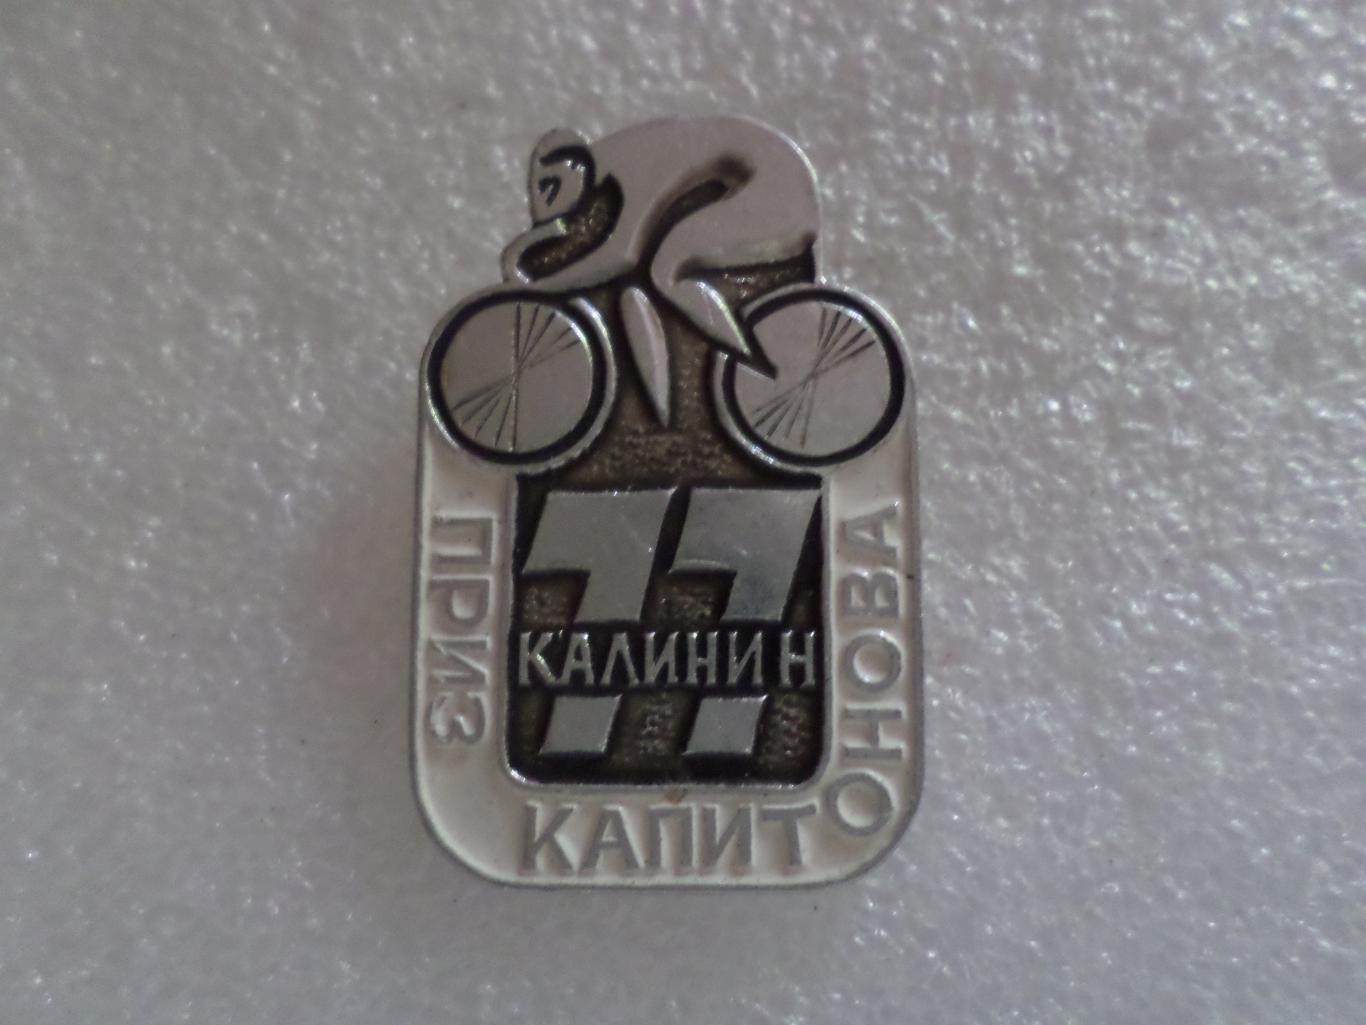 Значок Велоспорт Приз Капитонова 1977 г г. Калинин